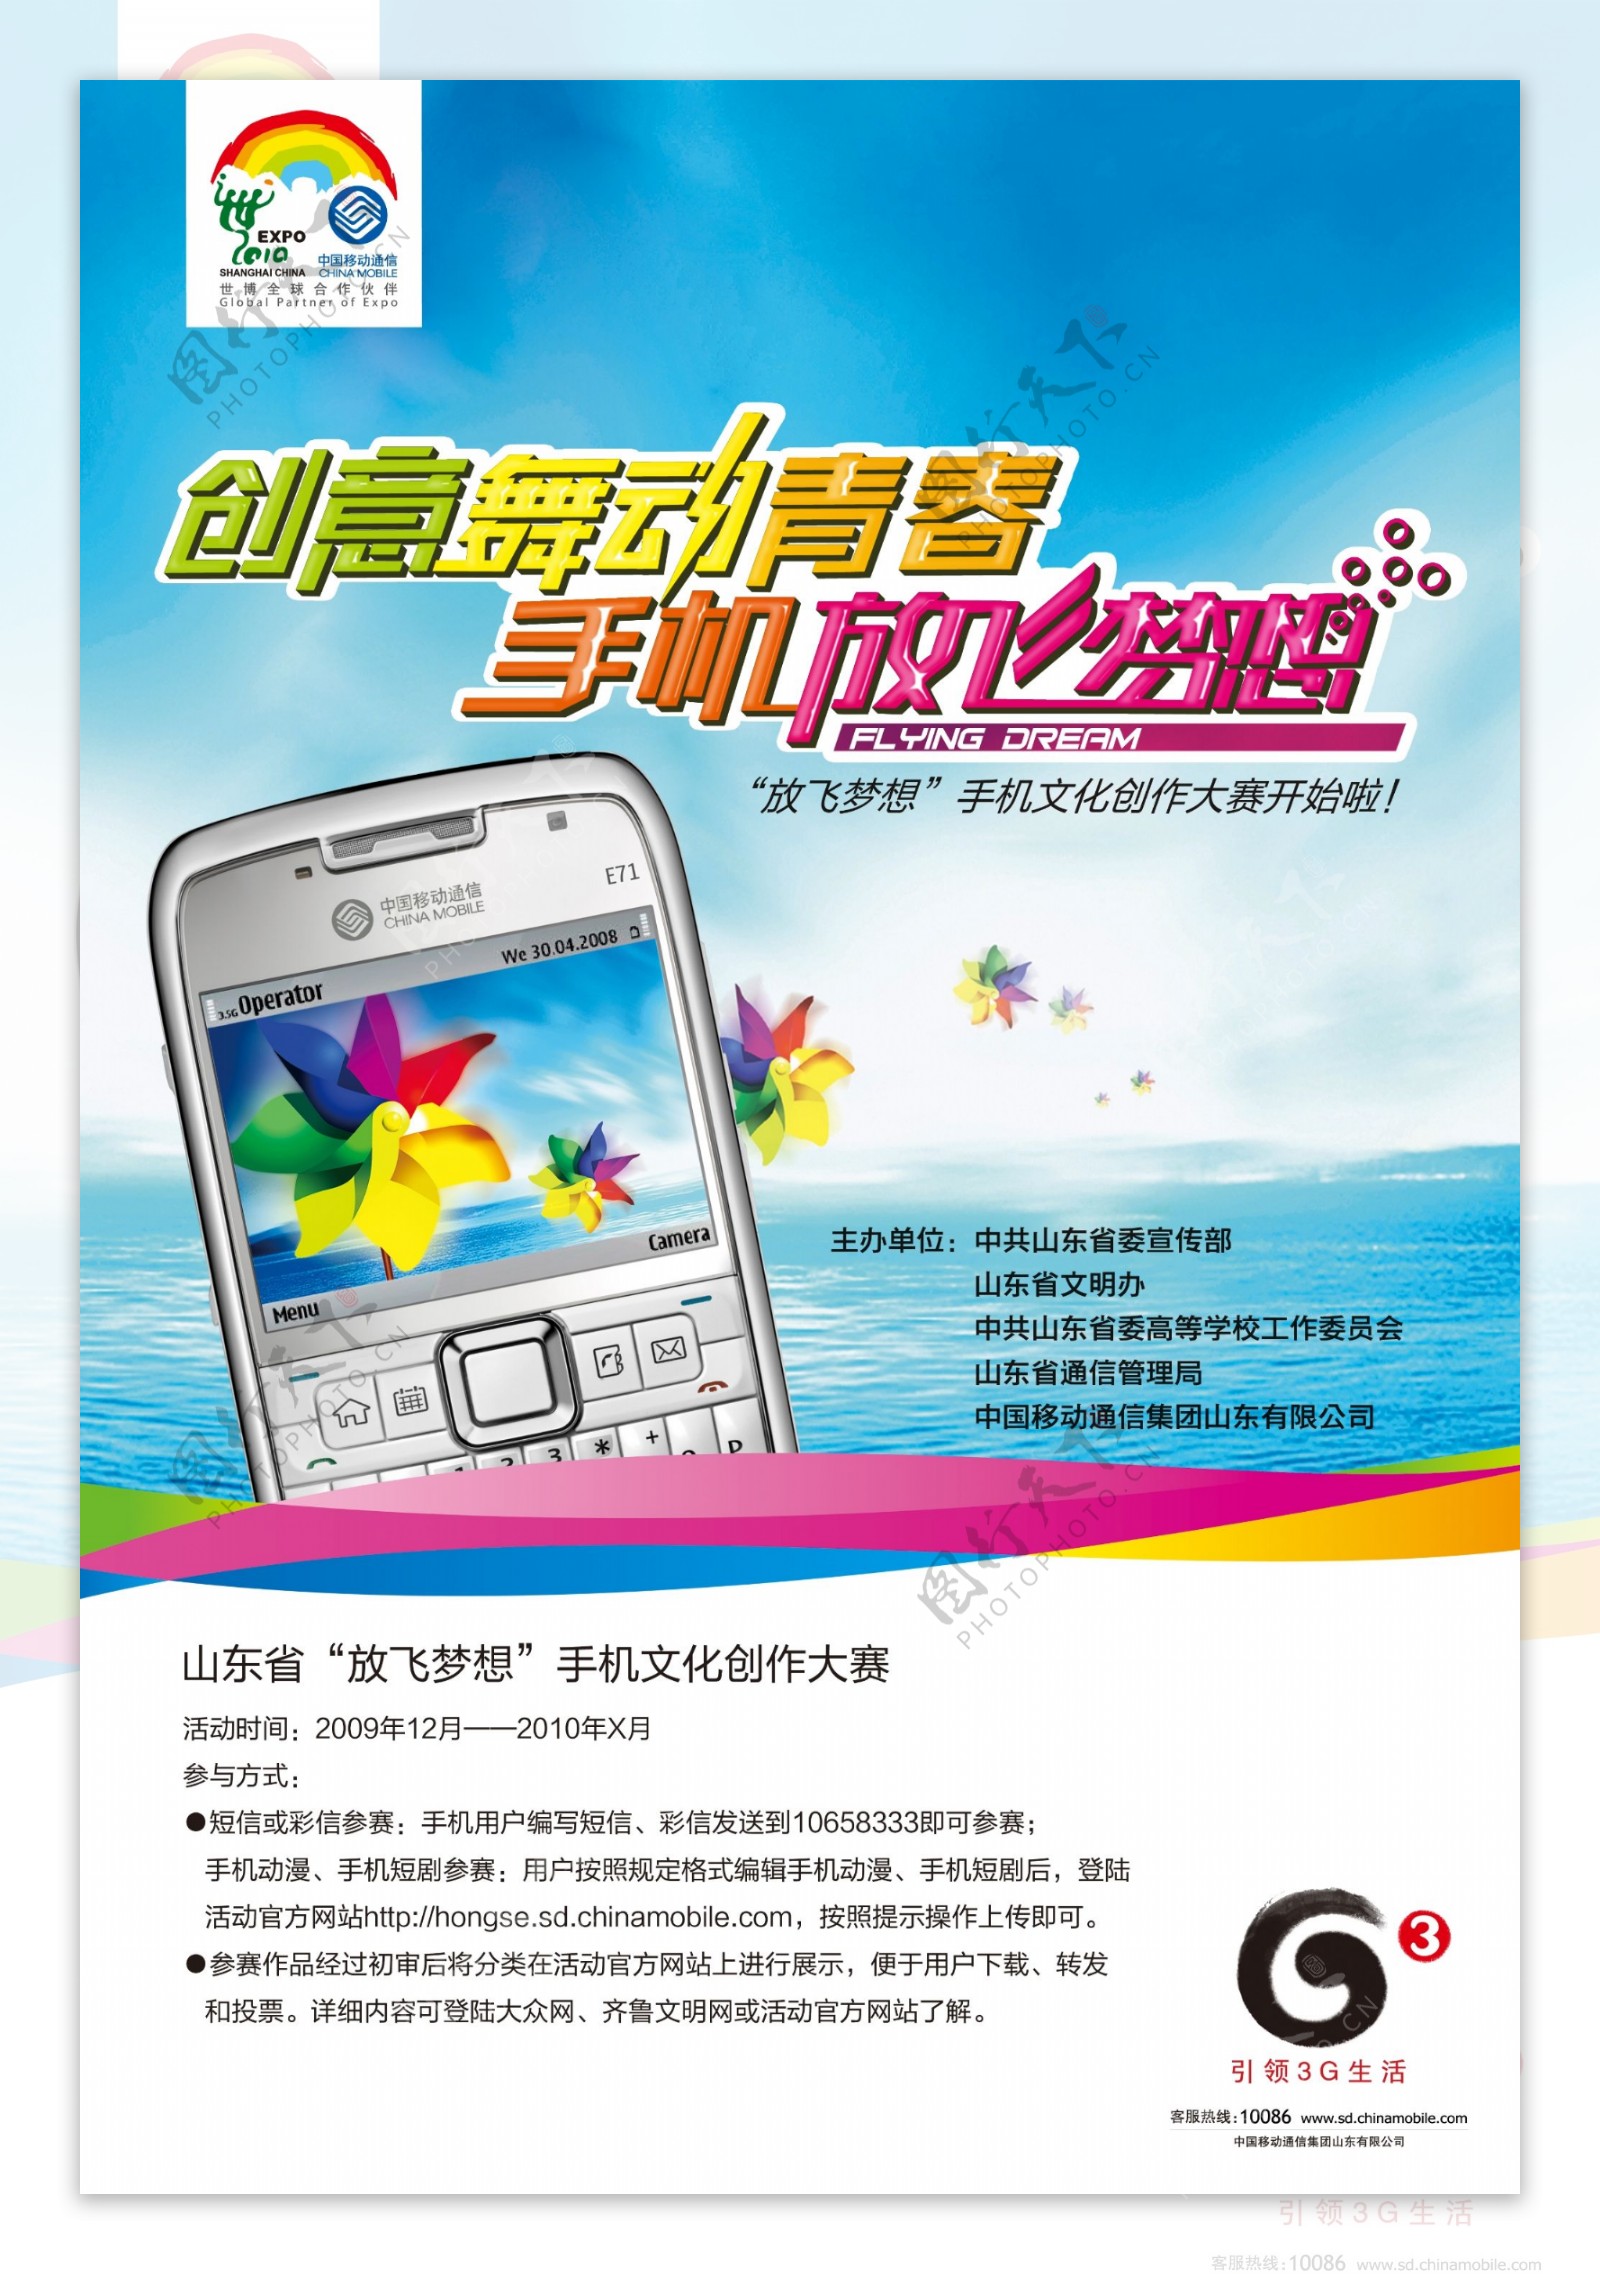 中国移动3g创意舞动青春手机放飞梦想公益海报字体变形分出品15966692159图片